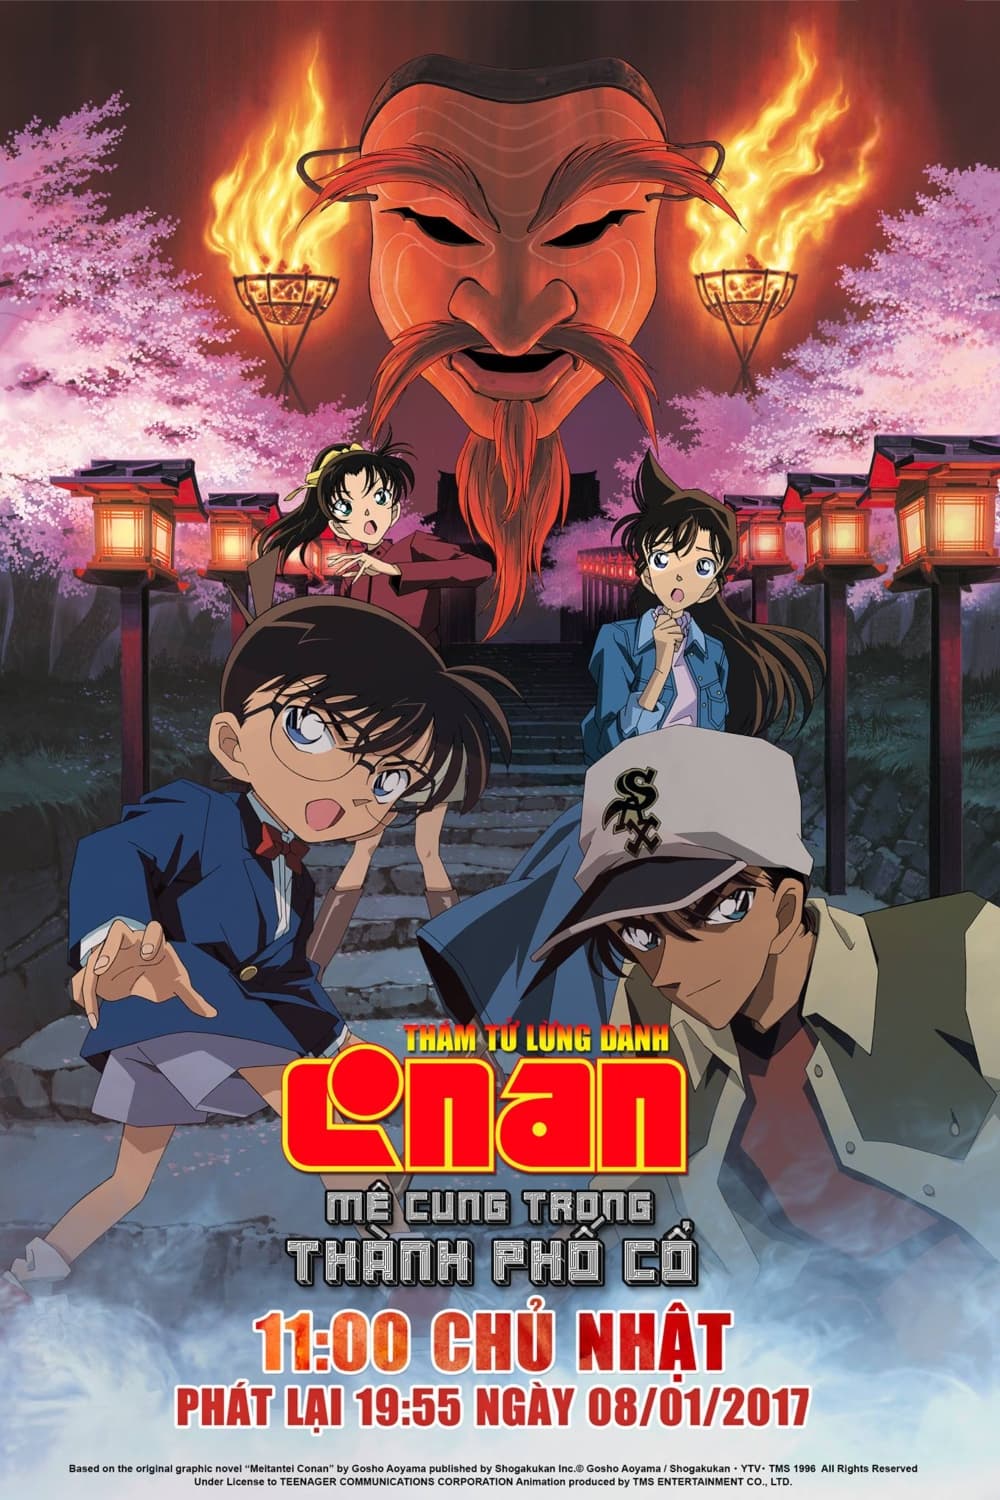 Thám Tử Lừng Danh Conan 7: Mê Cung Trong Thành Phố Cổ (Detective Conan: Crossroad in the Ancient Capital) [2003]